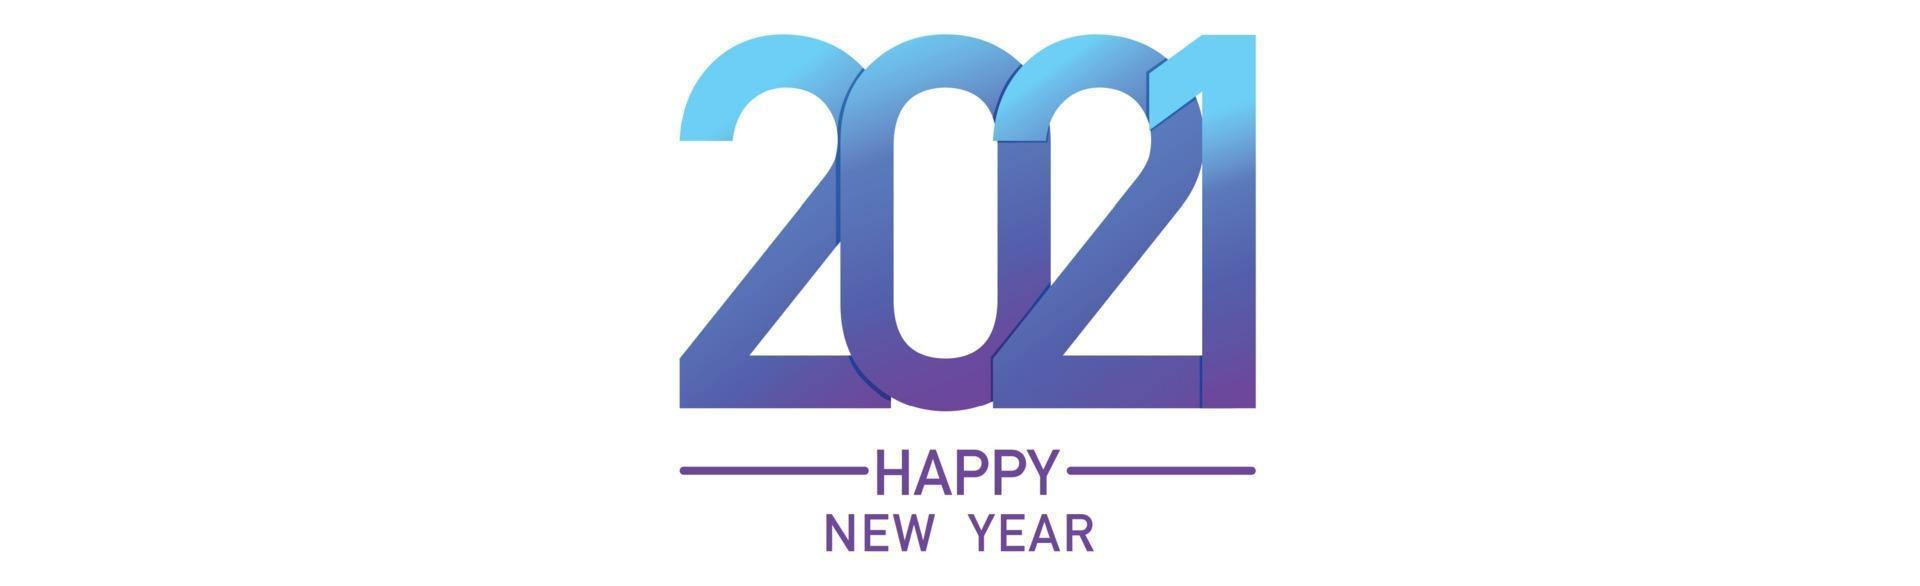 nummers 2021 wensen nieuwjaar op lichte achtergrond vector